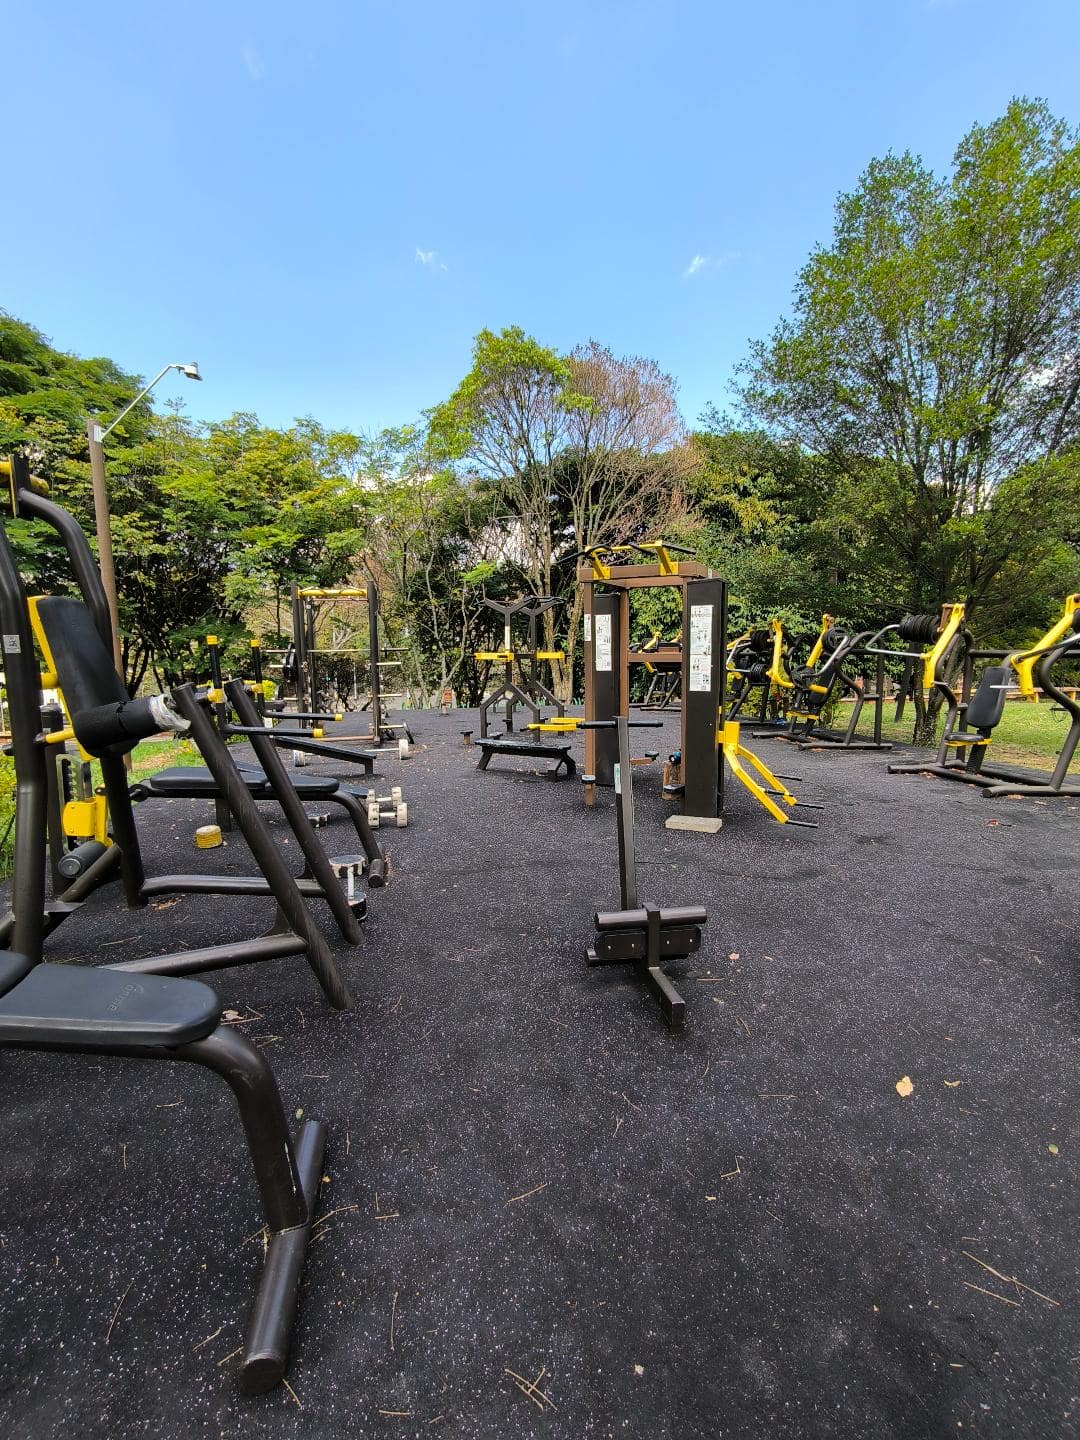 Workoutové ihrisko v parku.